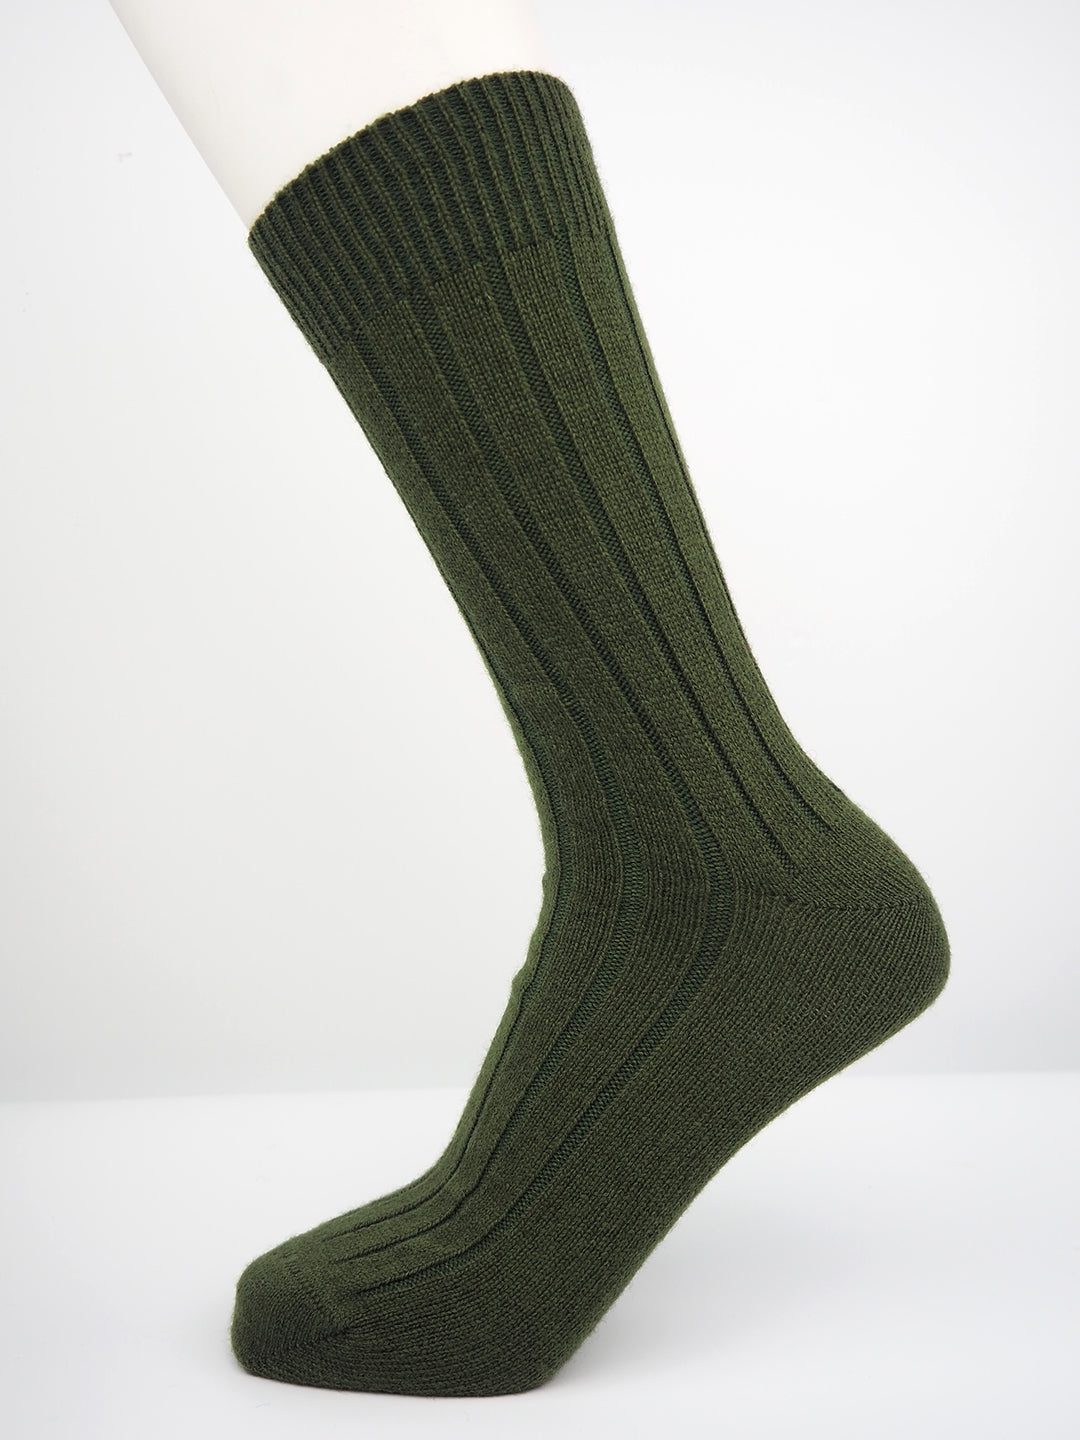 Mens cashmere moorland socks designed by Rosie Sugden. Scottish textiles showcase